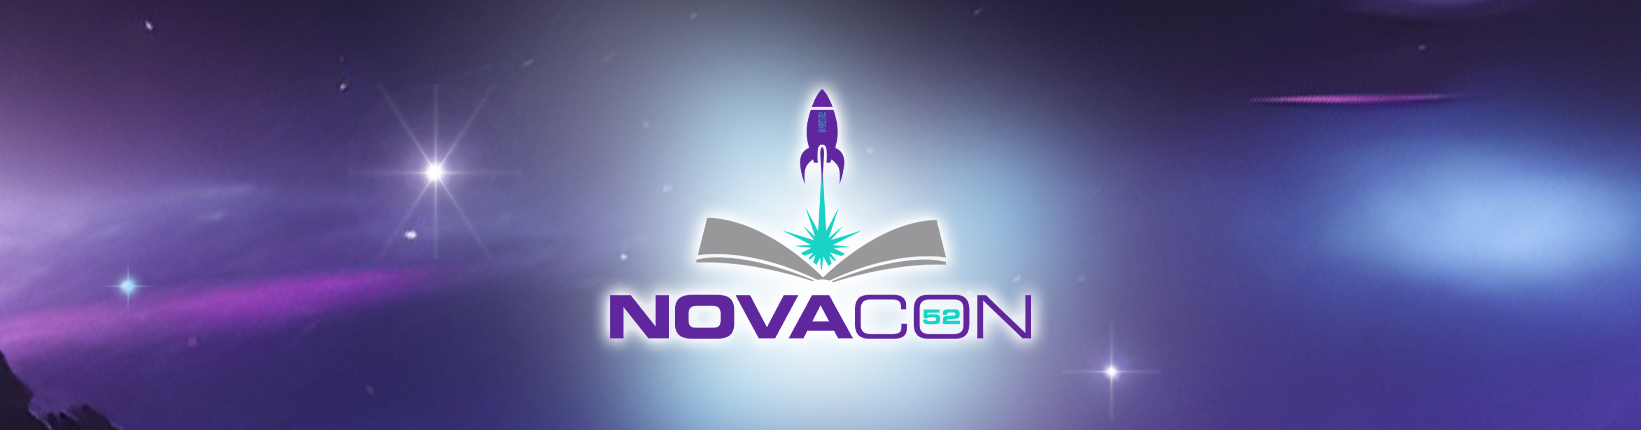 Novacon - the UK's longest established science fiction convention